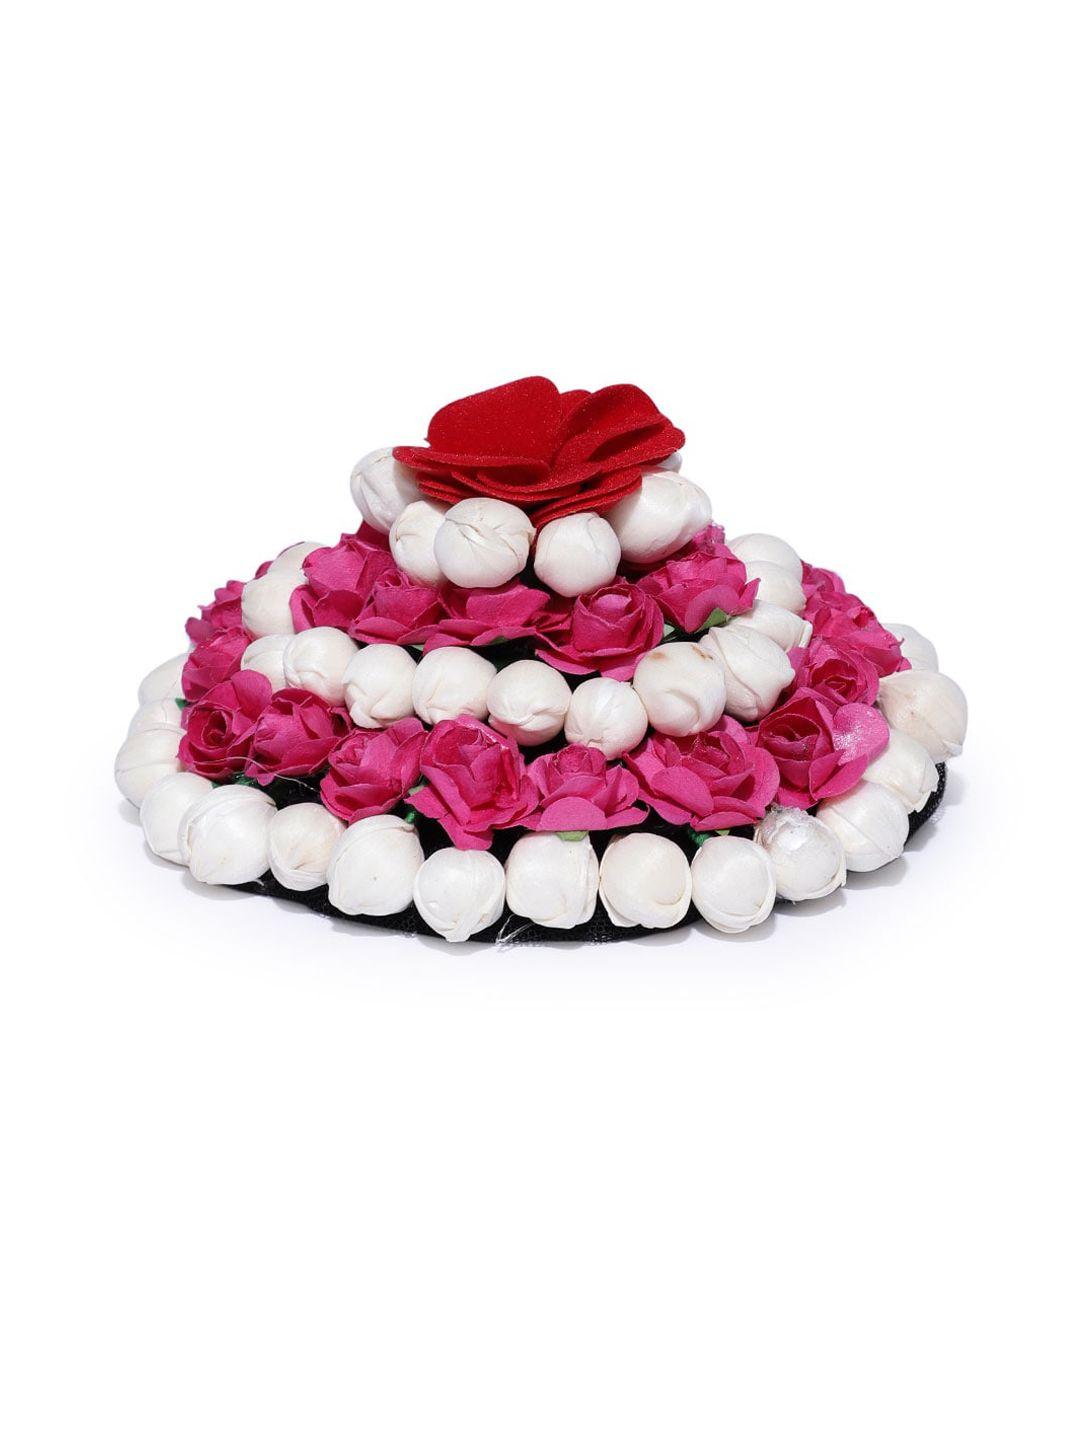 chronex-artificial-red-&-white-rose-flowers-bridal-bun-juda-maker-flower